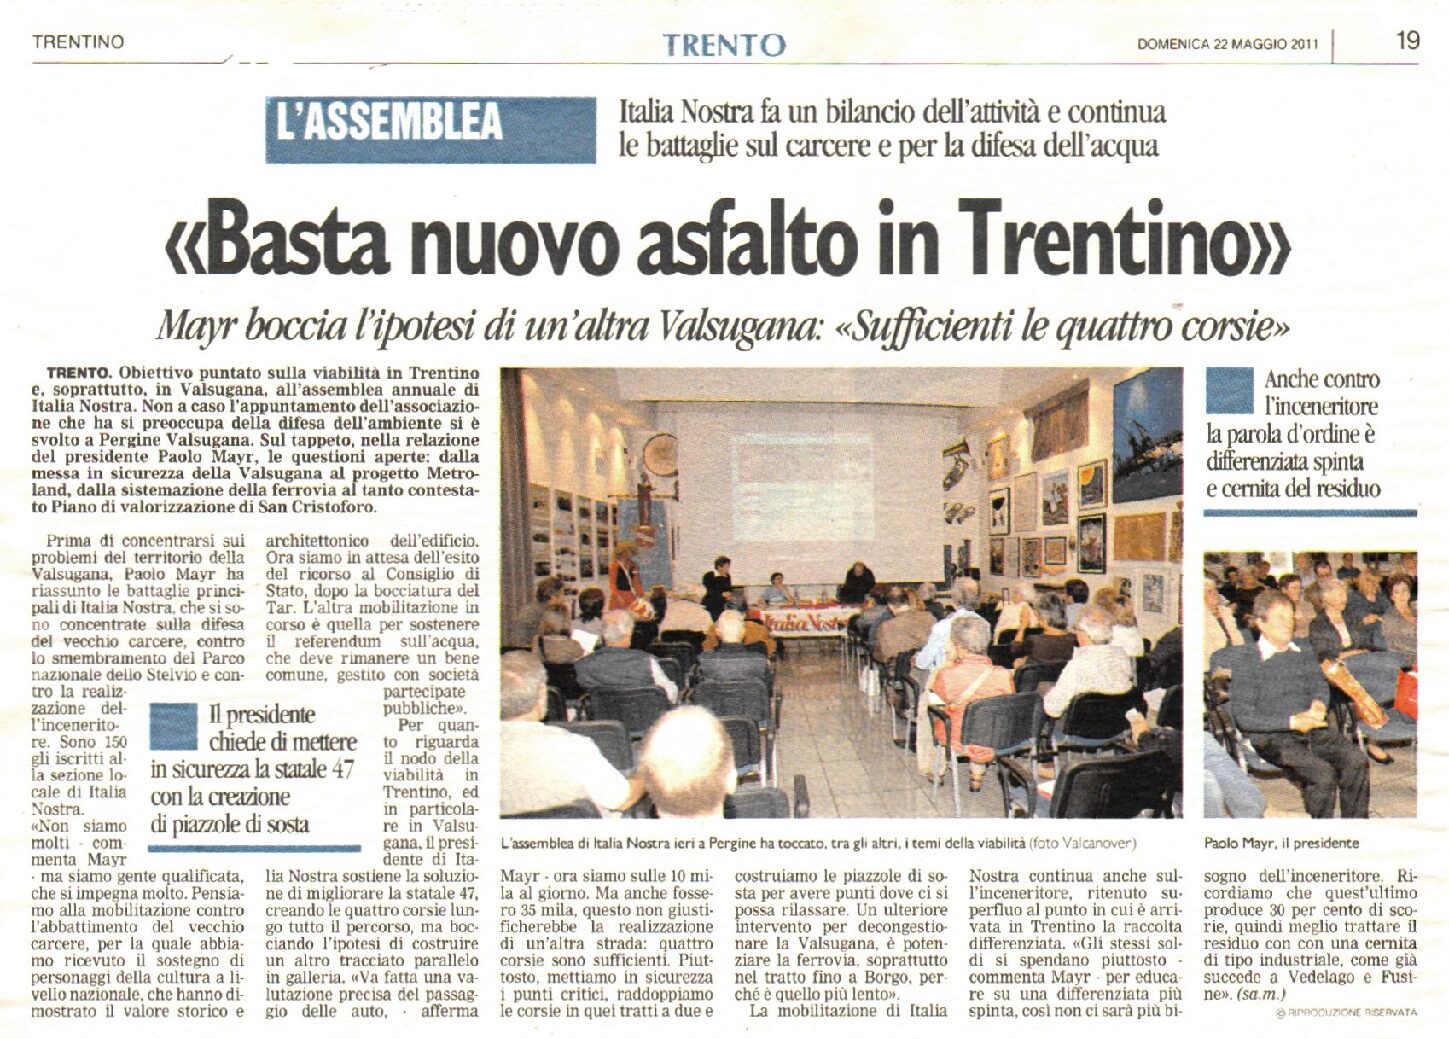 Assemblea ordinaria annuale 2011 – Articolo sul Trentino del 22 maggio, pagina 19